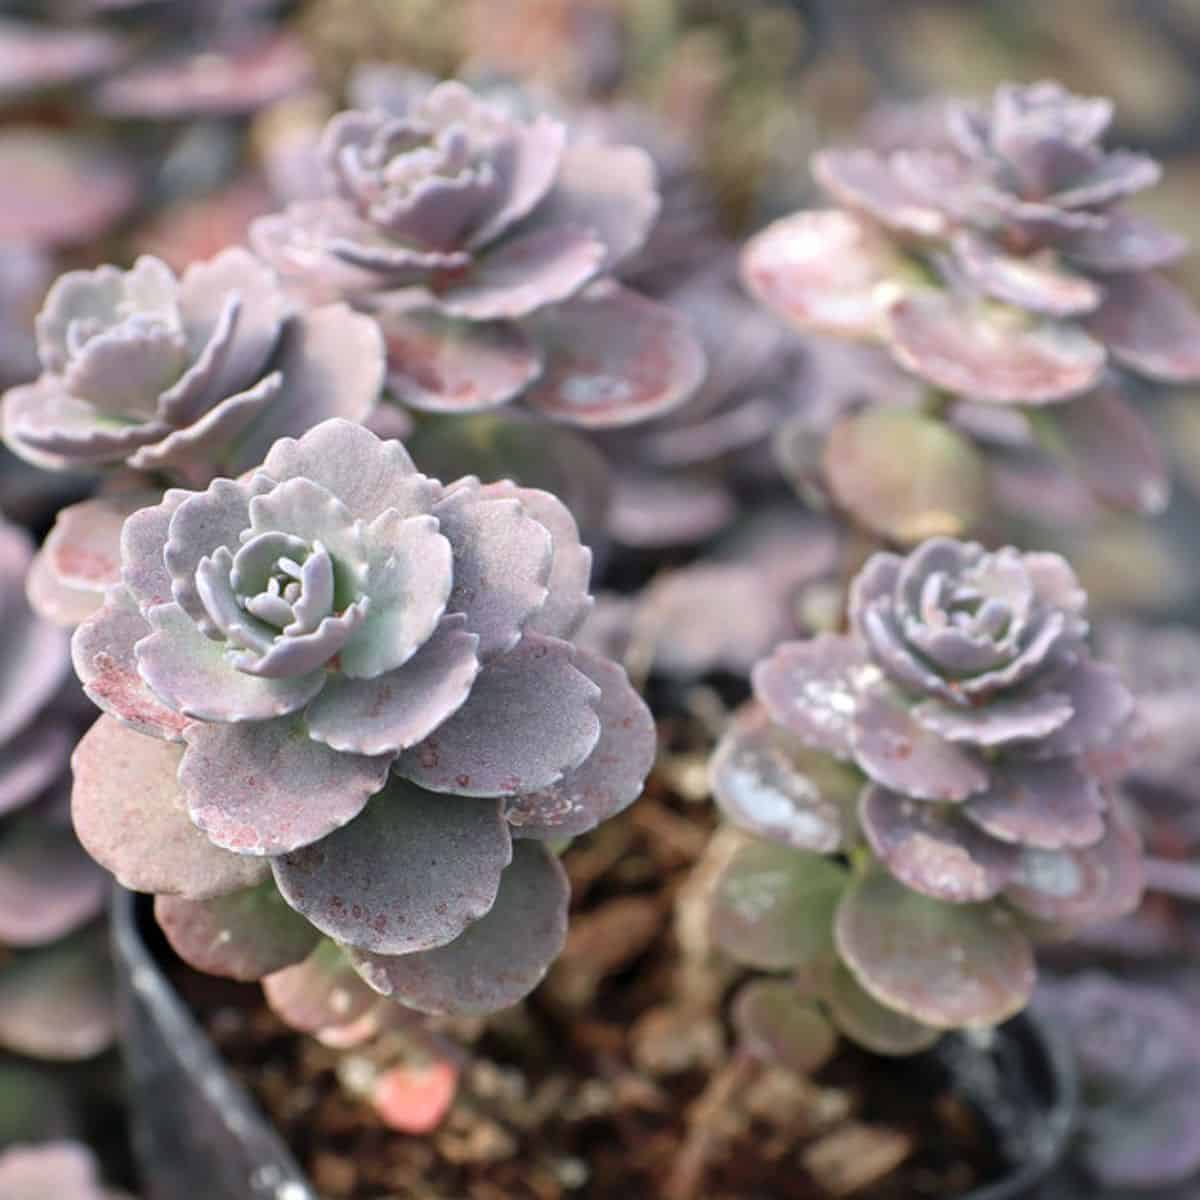 Sedum spurium ‘Ayers Rock’ growing in a pot.